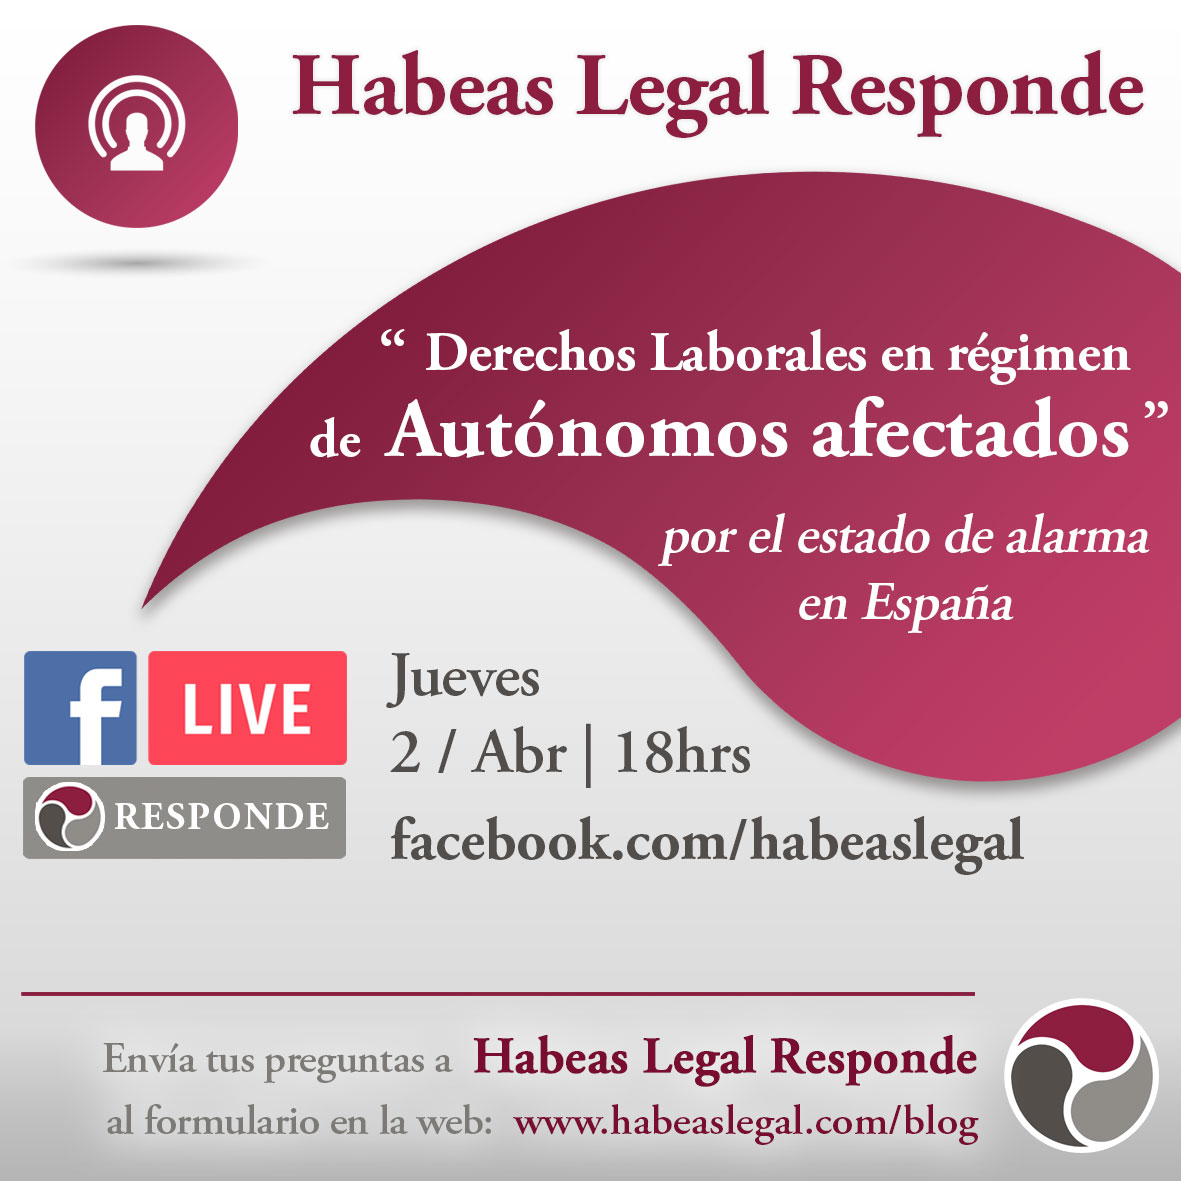 Derechos Laborales en régimen de autónomos afectados por el estado de alarma en España - Habeas Legal